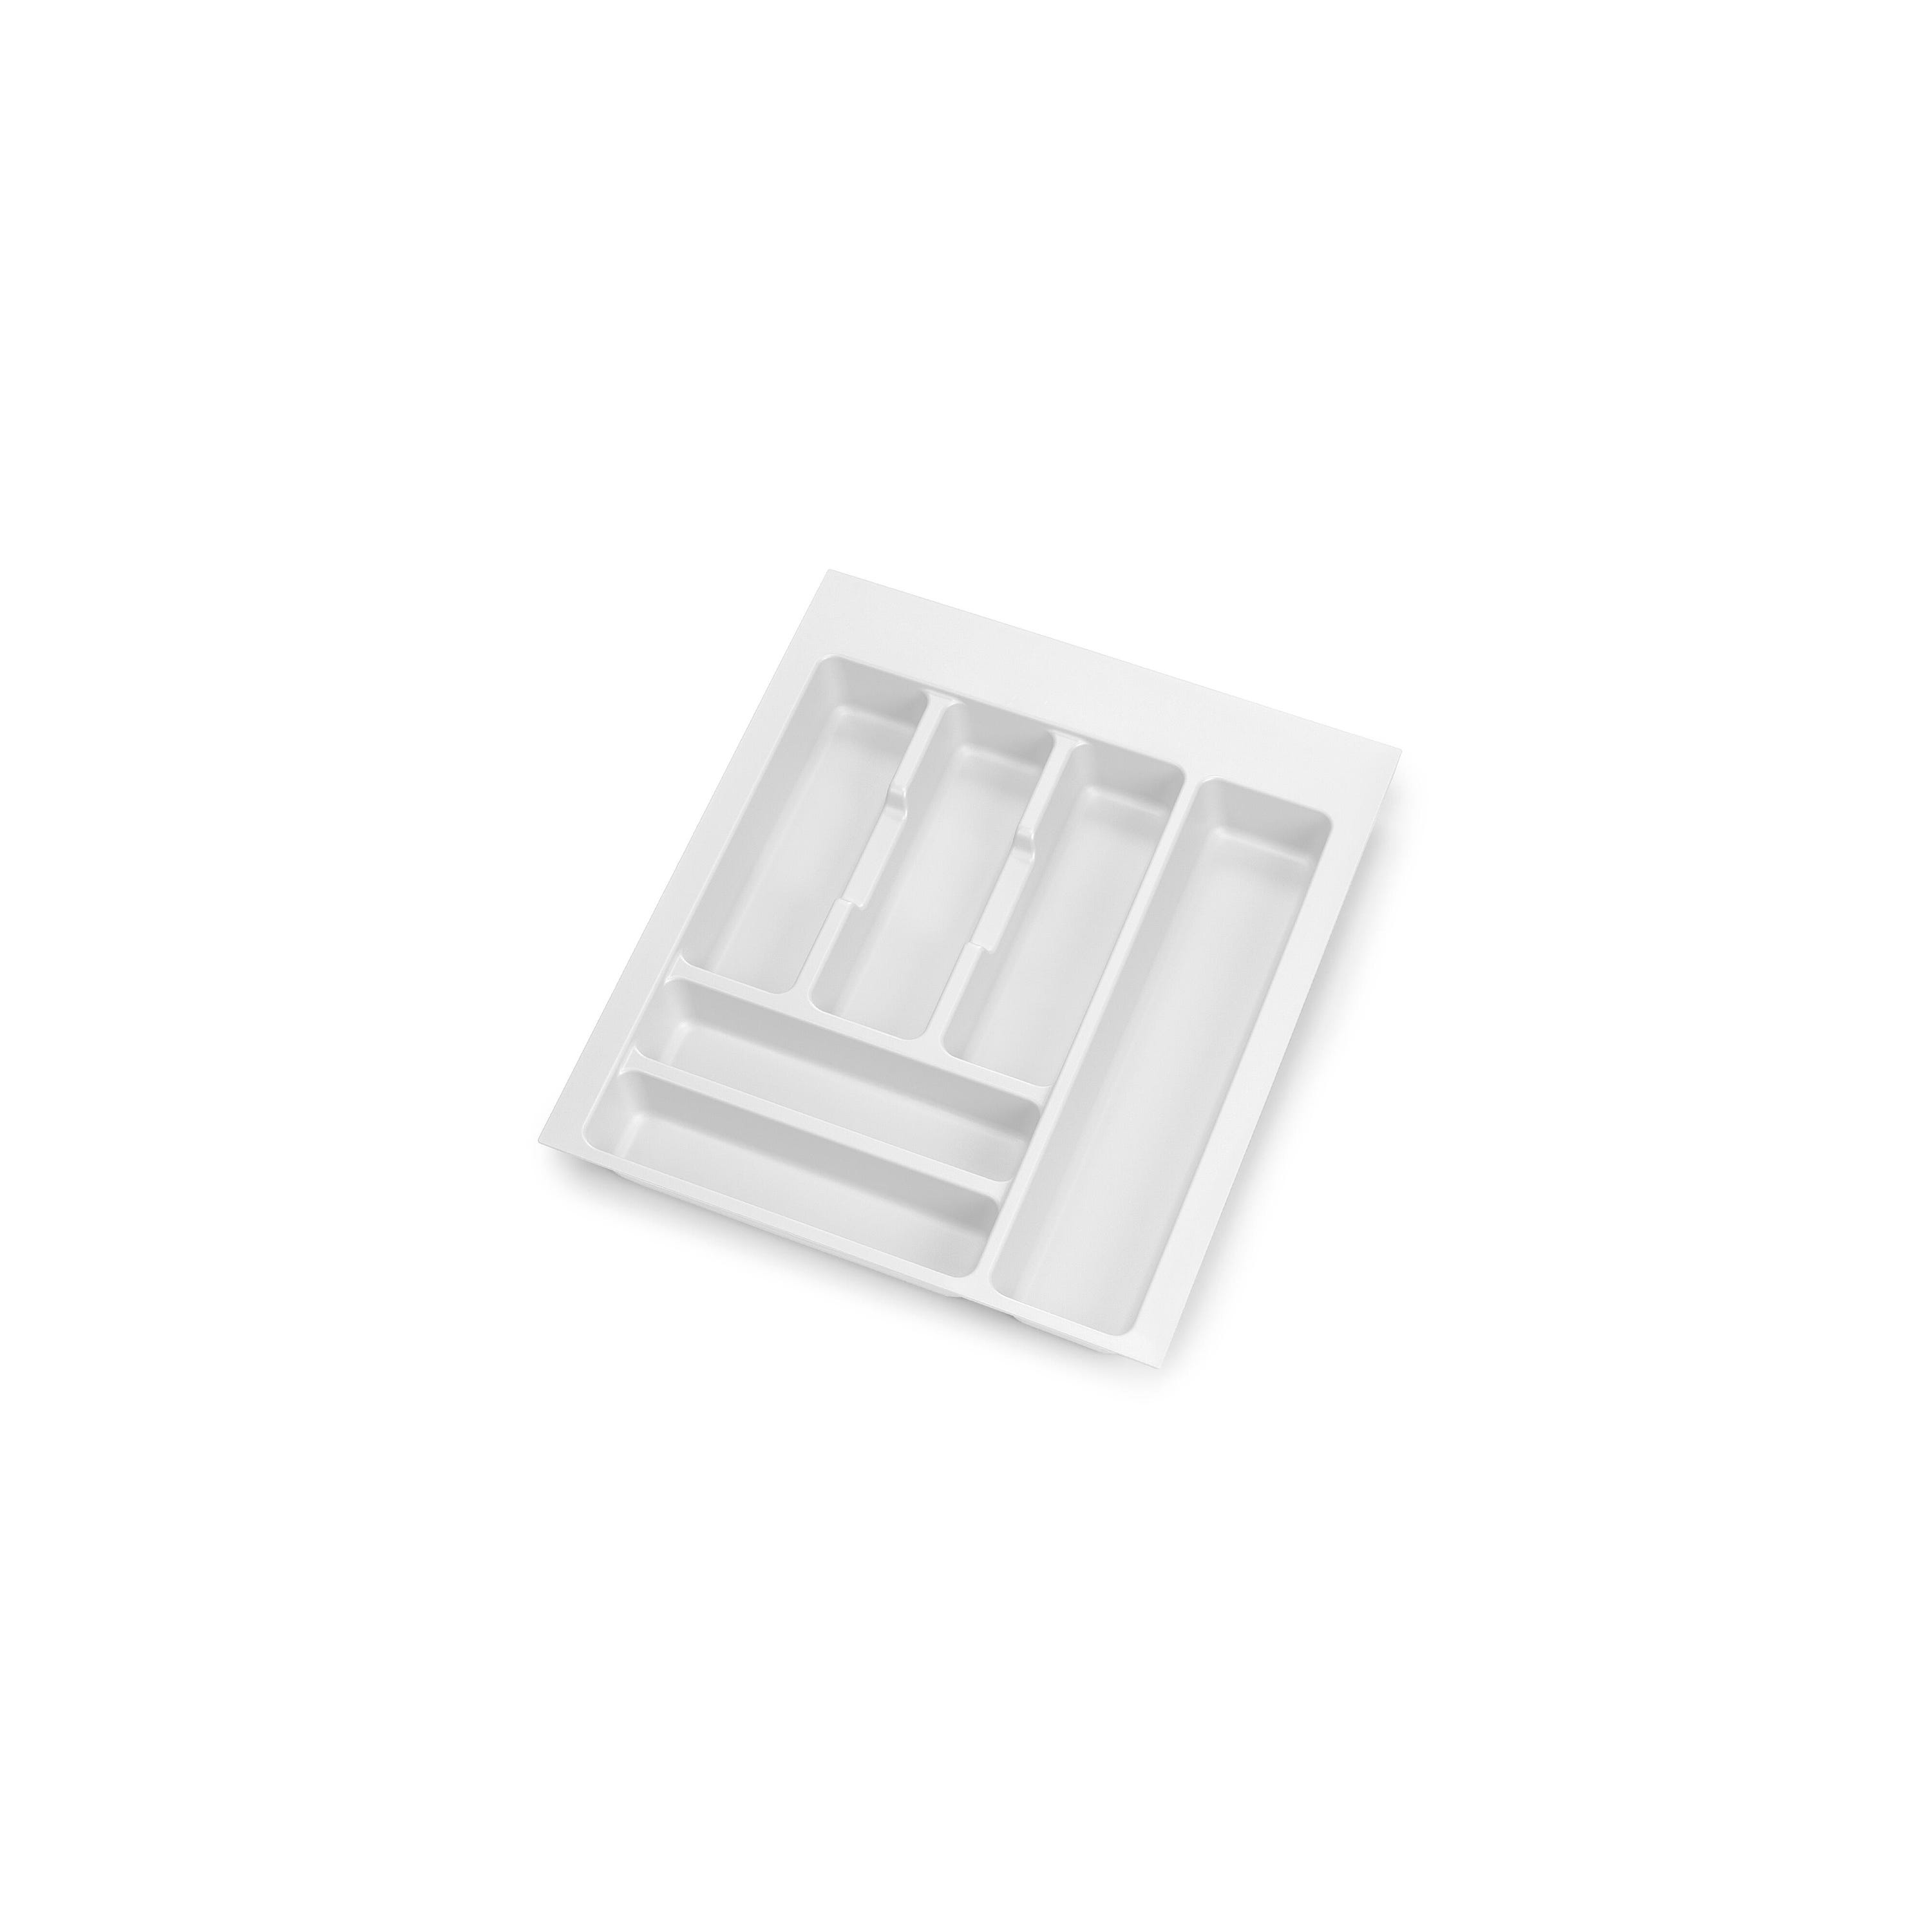 2 Cuberteros plástico blanco para cajón